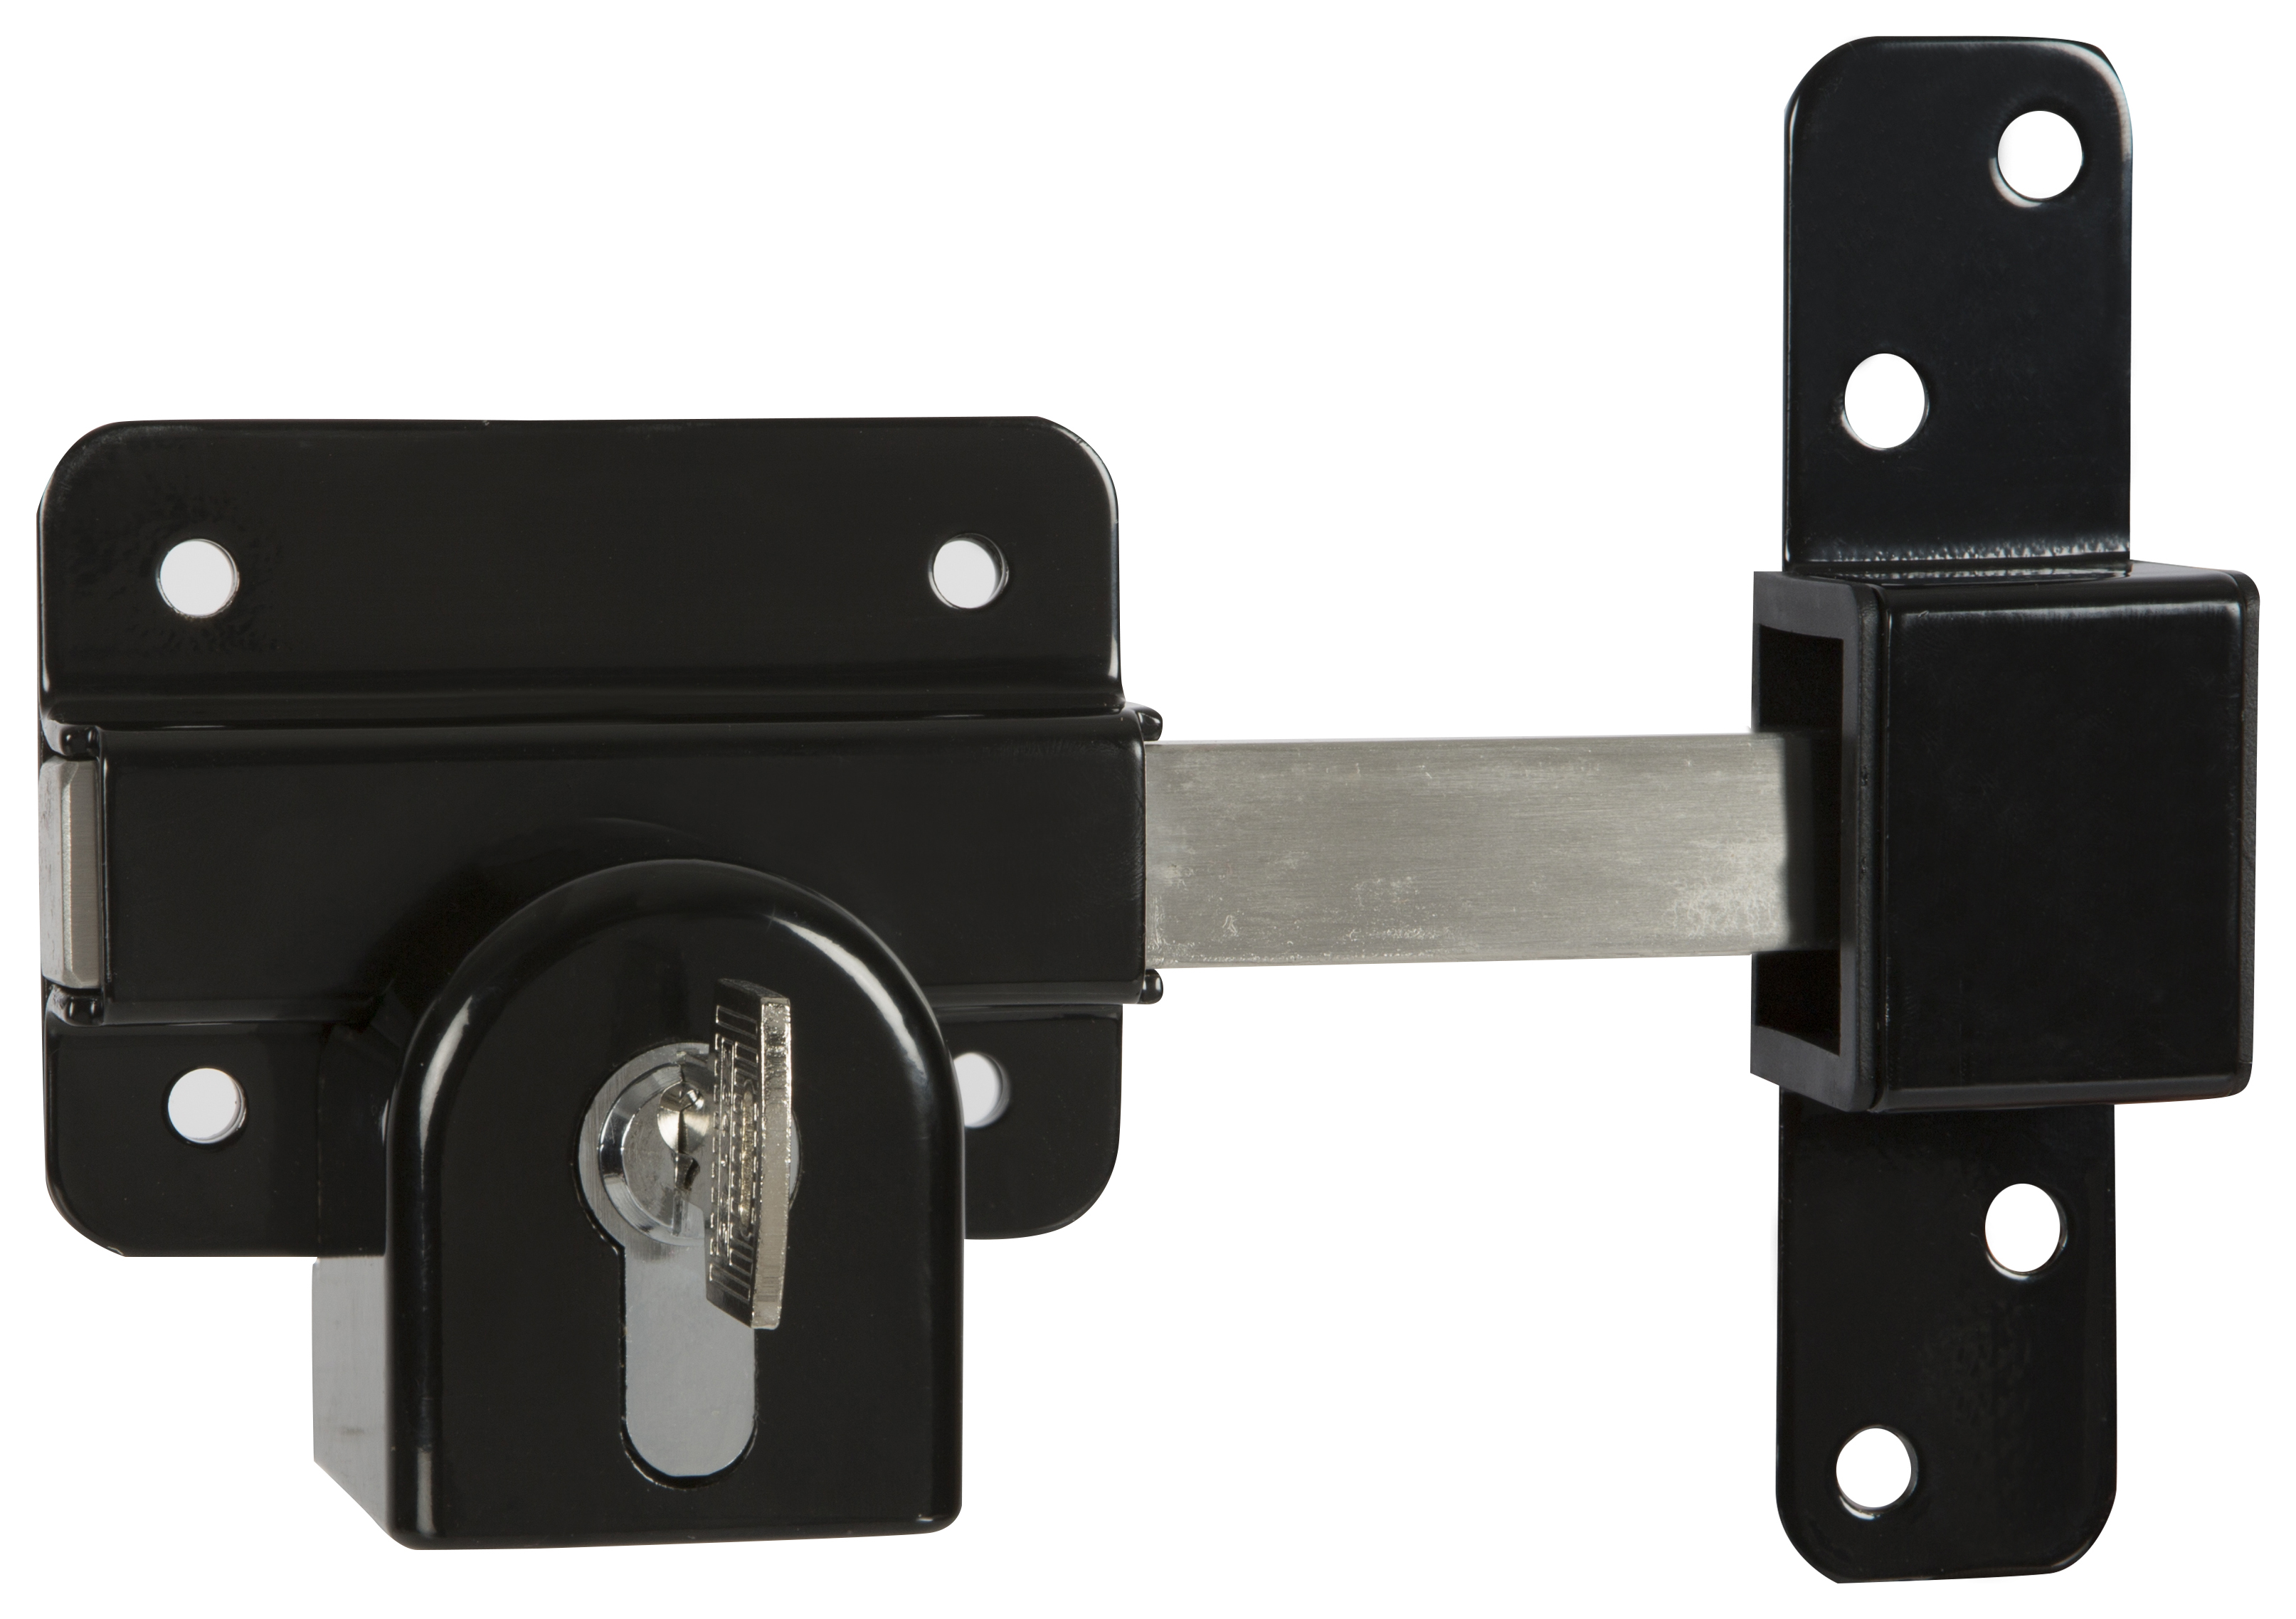 GateMate B1490096 Double Locking Euro Profile Long Throw Lock - 70mm